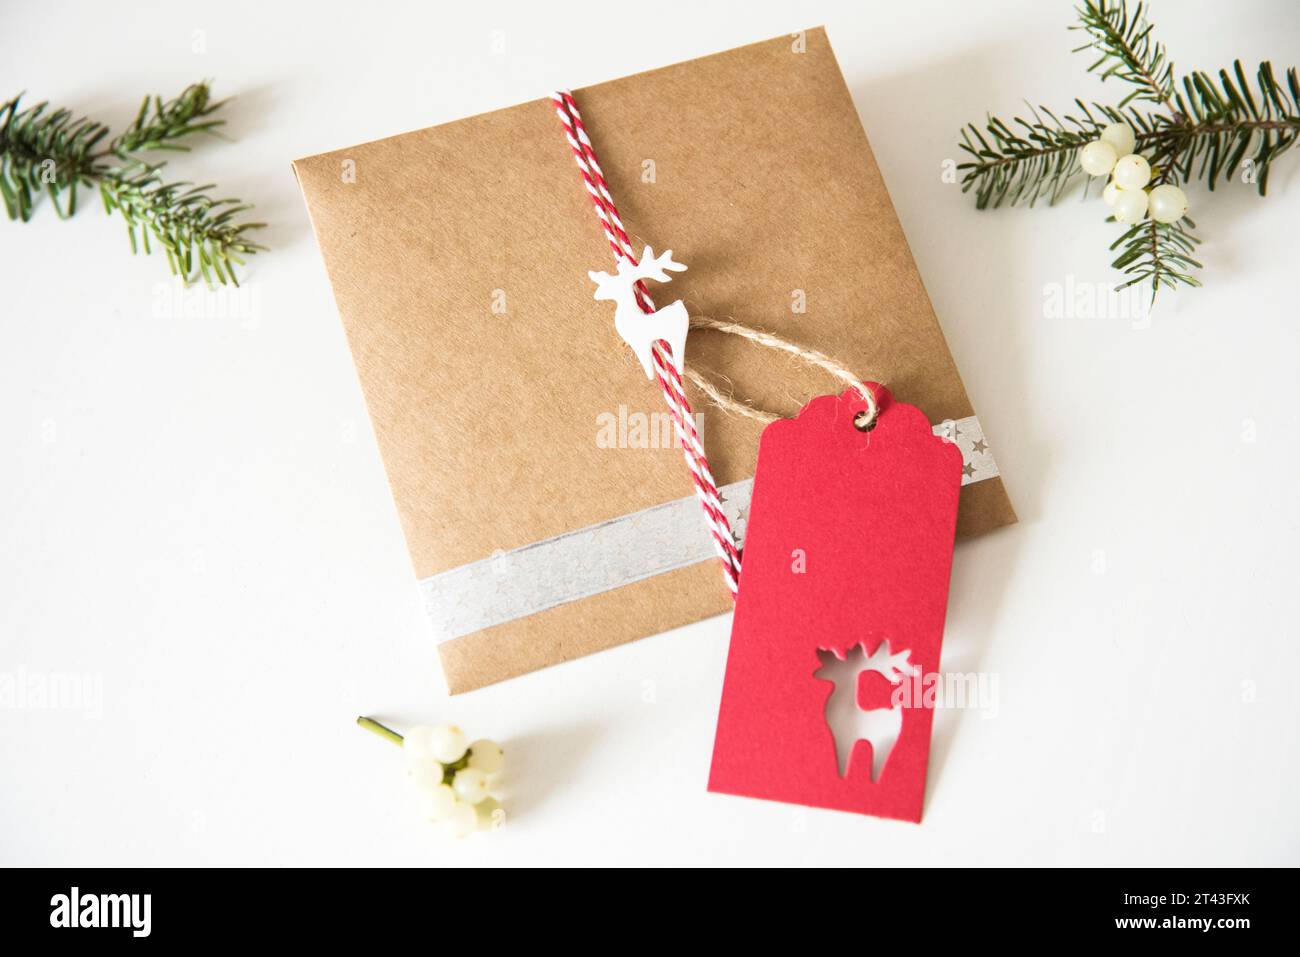 Rustikale Geschenkverpackung mit Bastelpapier, verziert mit einem charmanten Rentier und duftenden Tannenzweigen, die die Essenz der weihnachtlichen Tradition einfangen Stockfoto